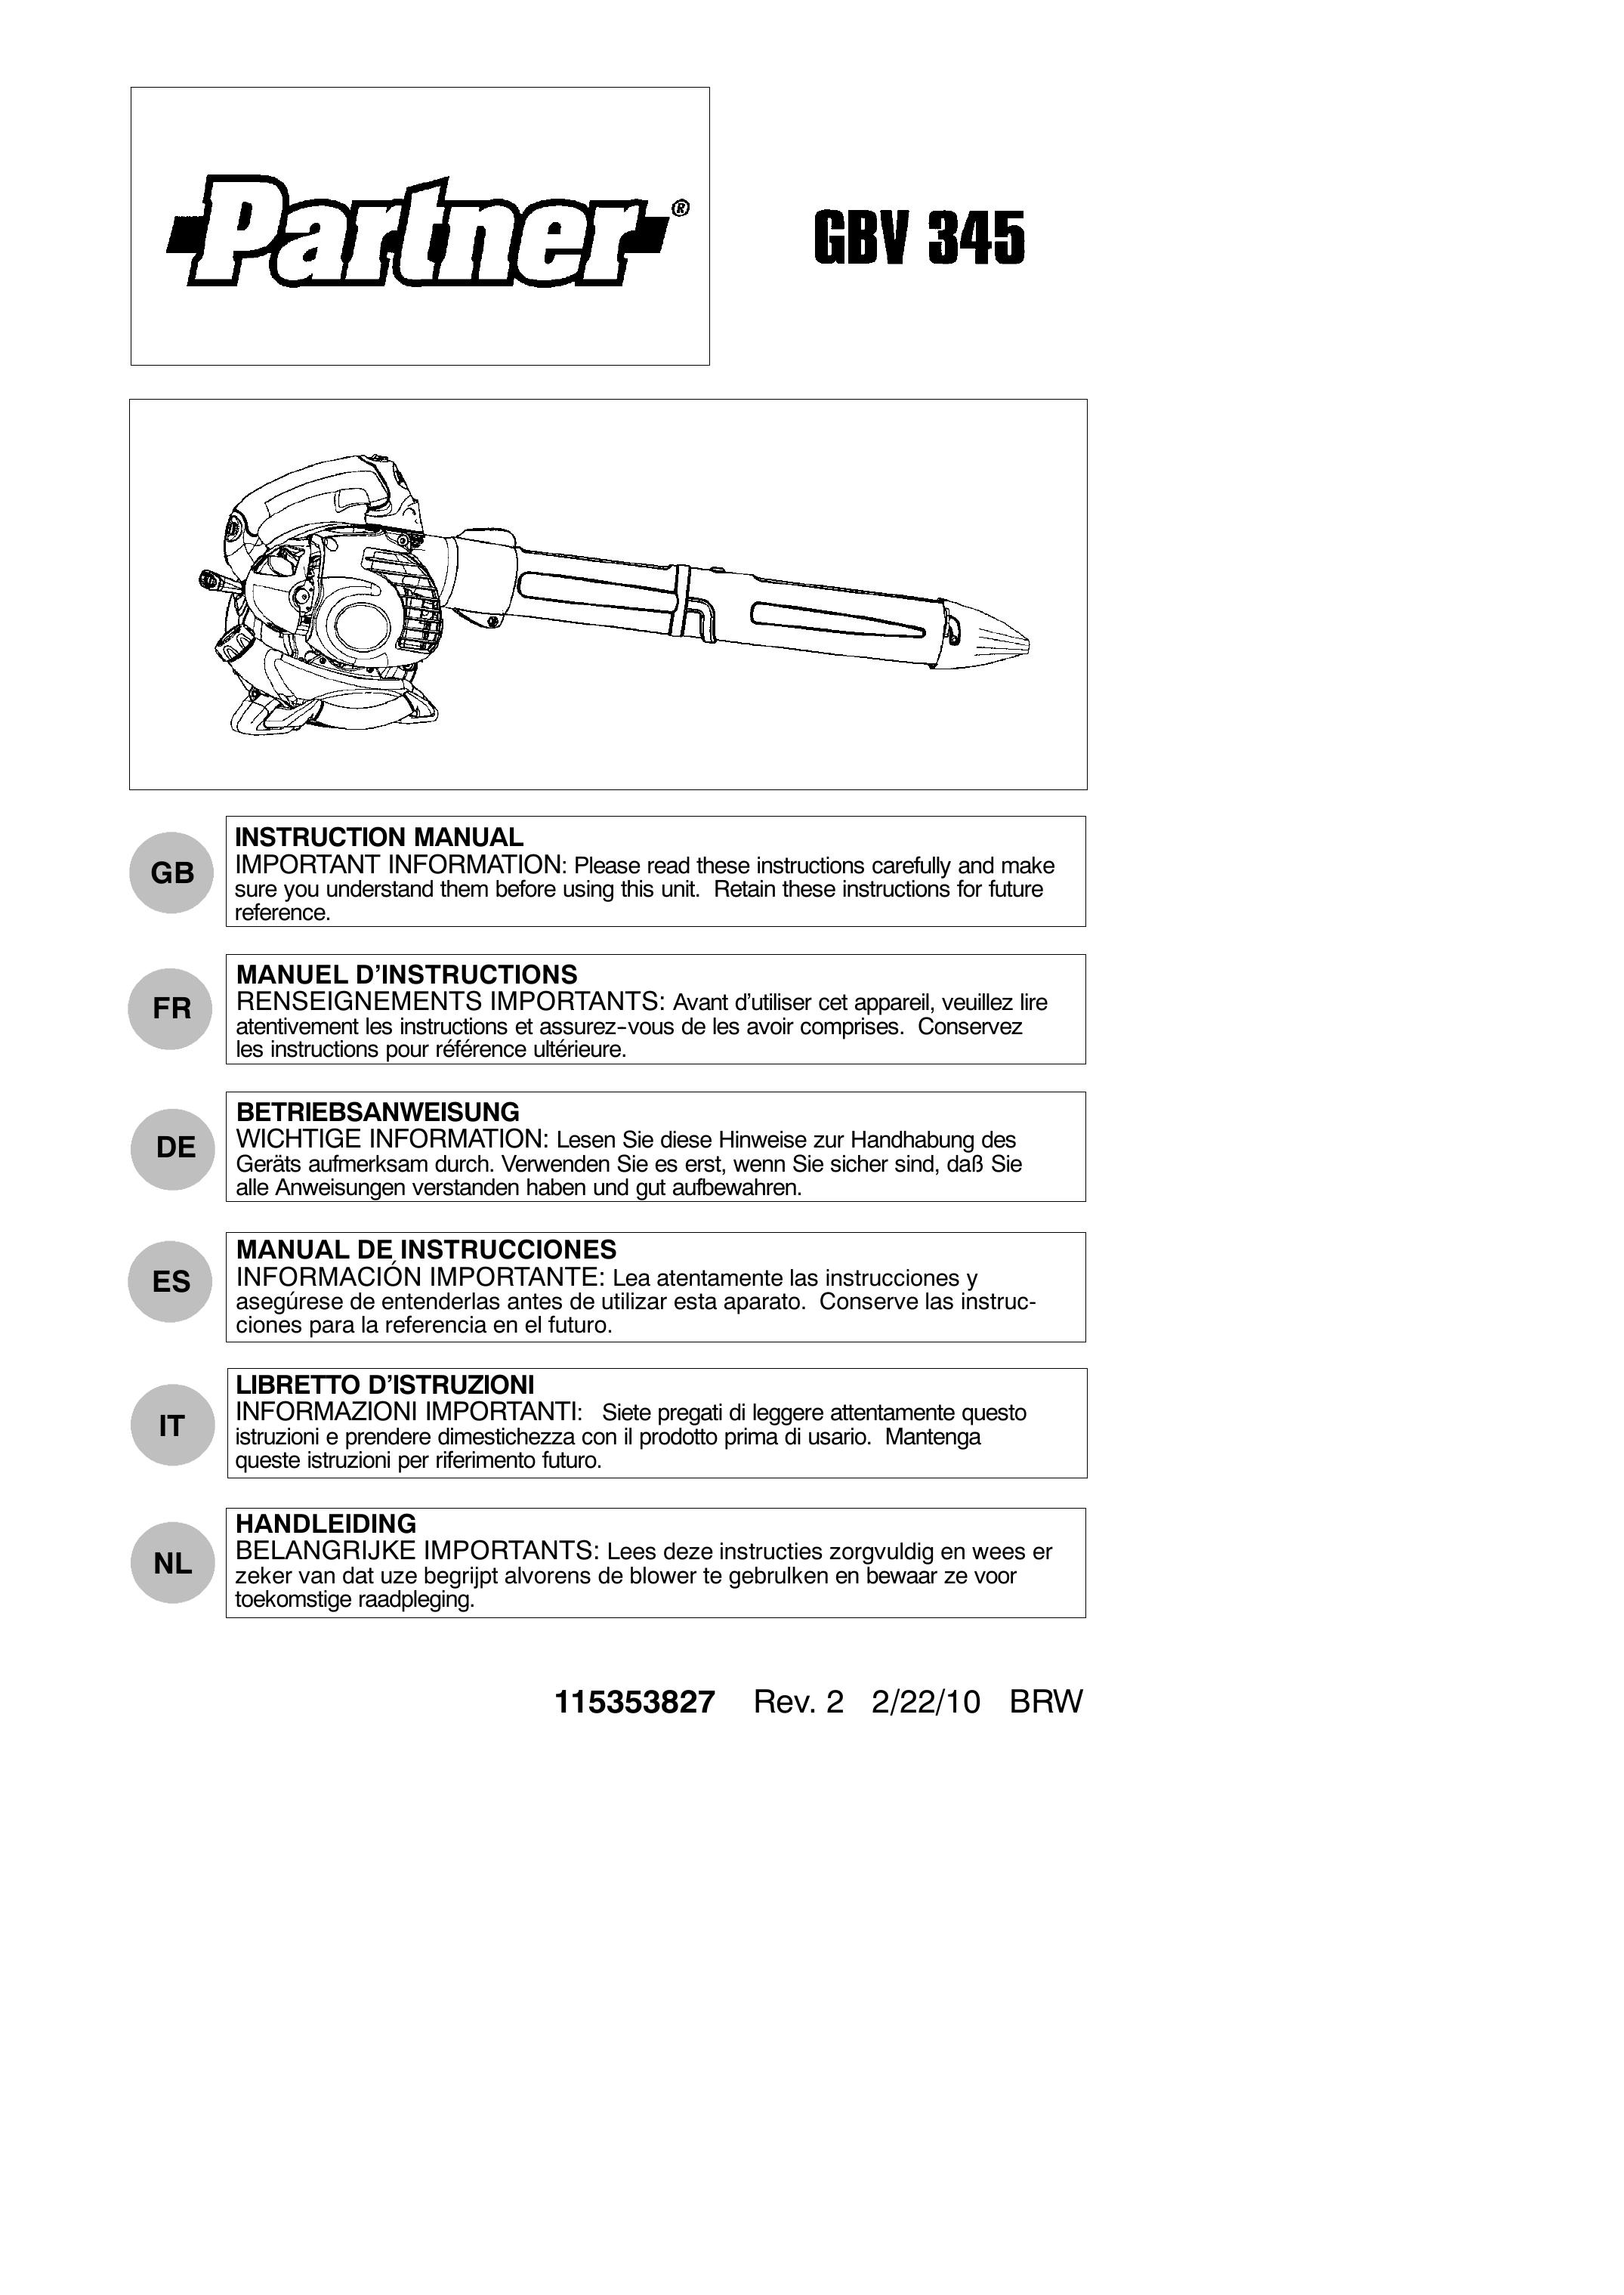 Partner Tech GBV 345 Blower User Manual